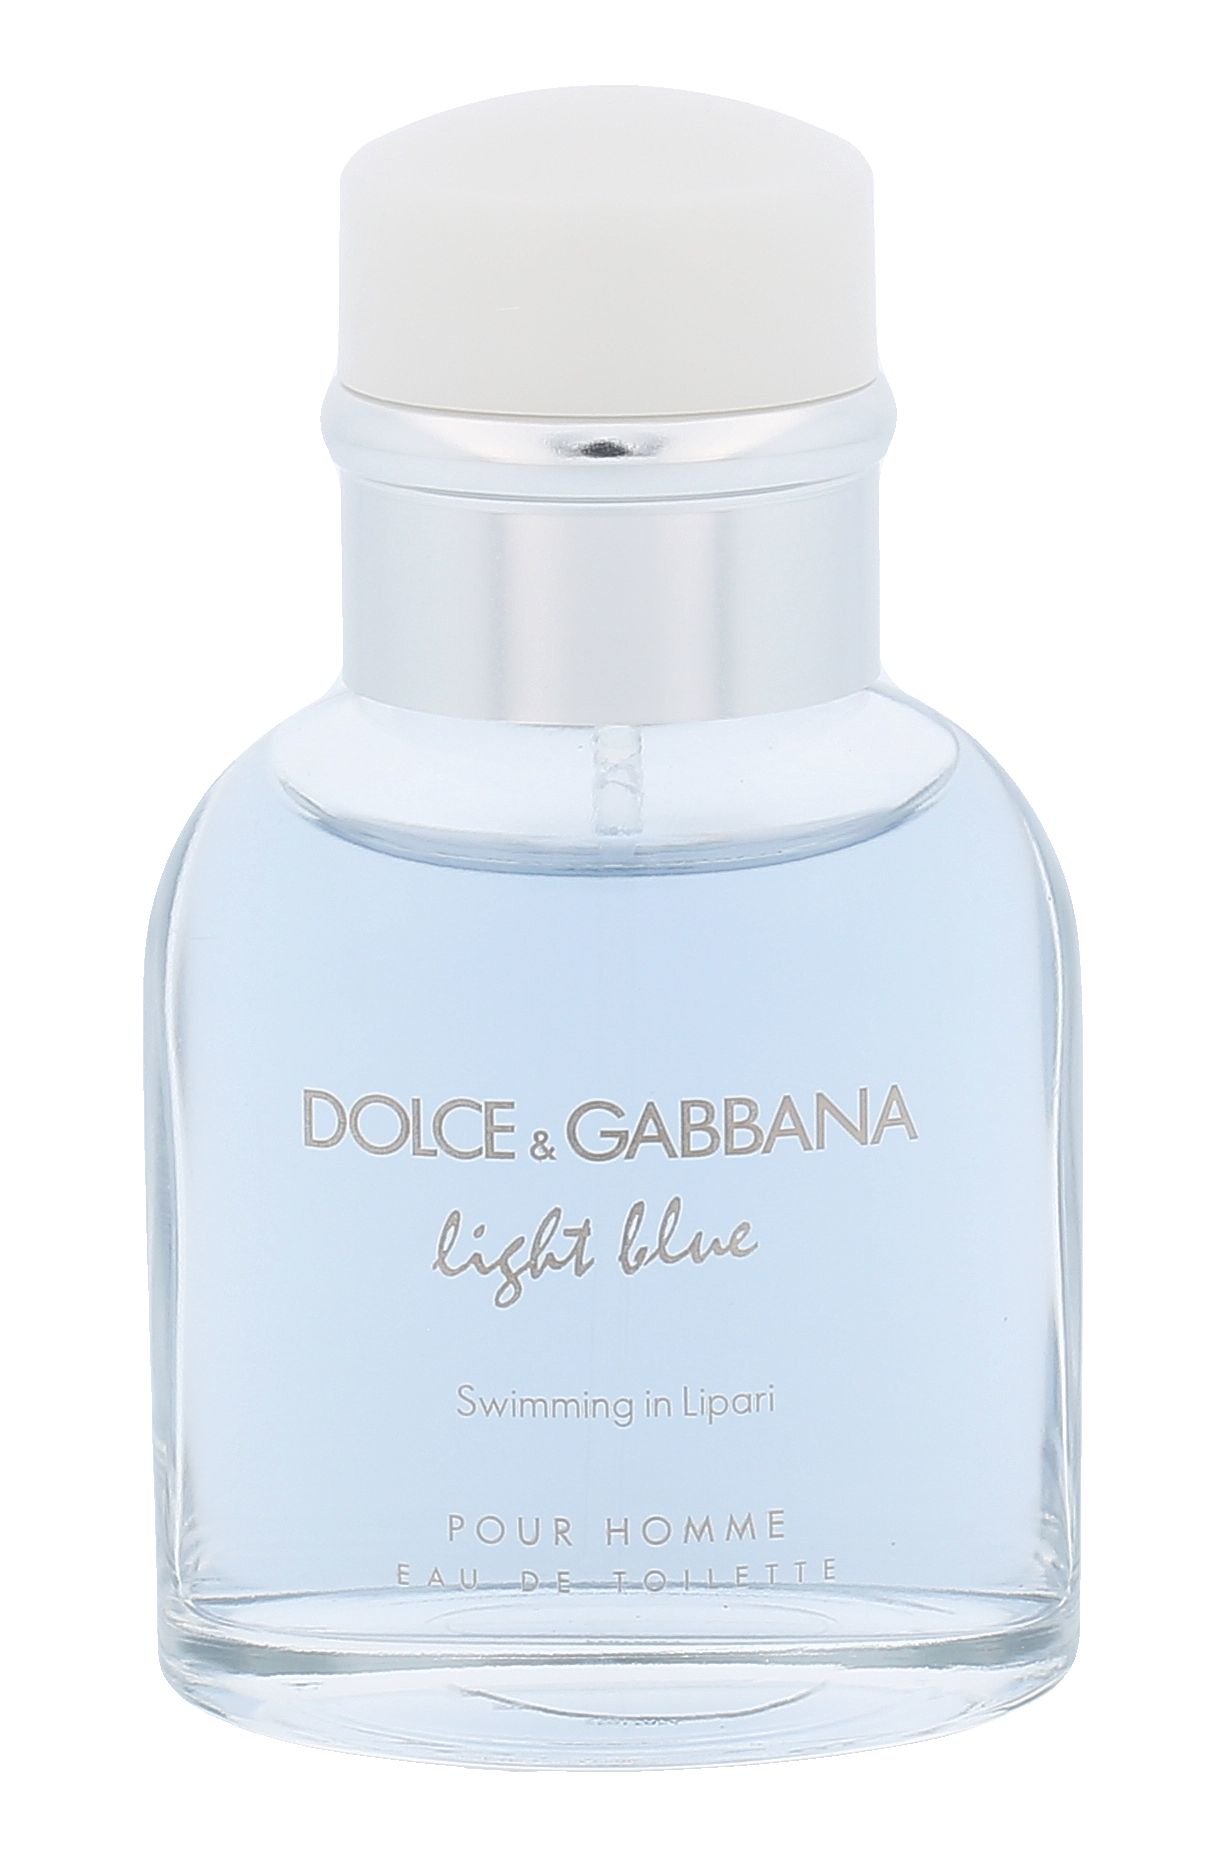 Dolce&Gabbana Light Blue Swimming in Lipari Pour Homme, edt 40ml